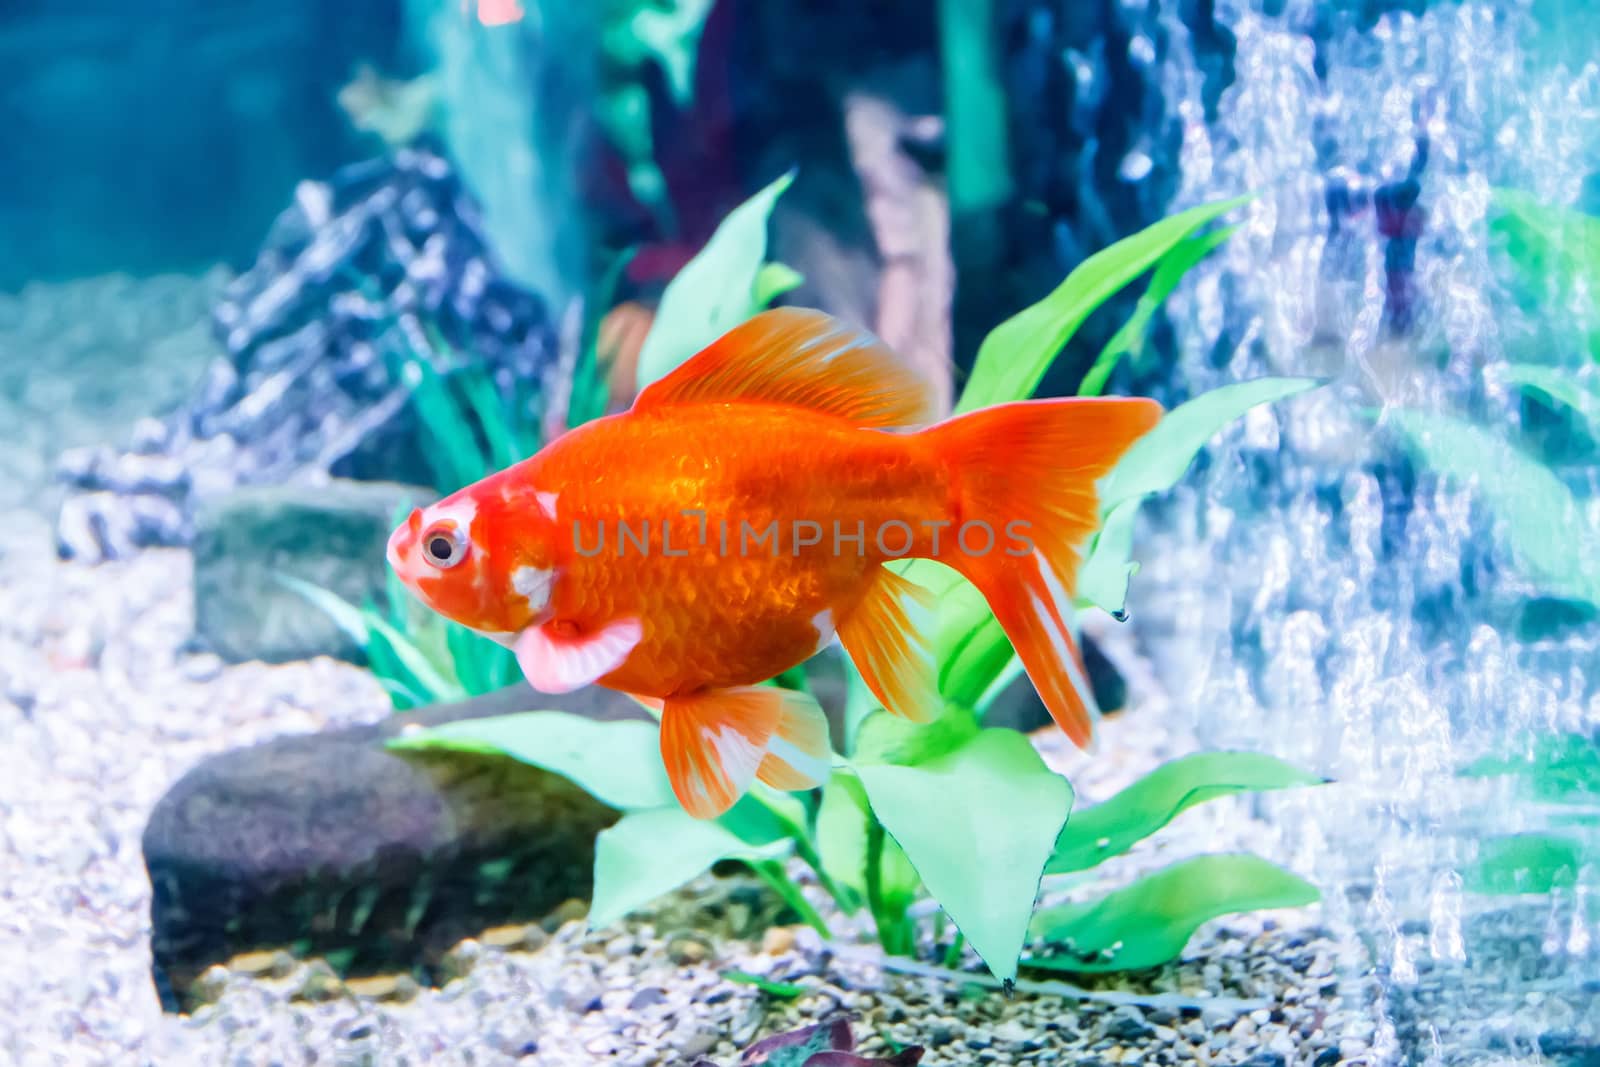 Aquarium goldfish by Julialine